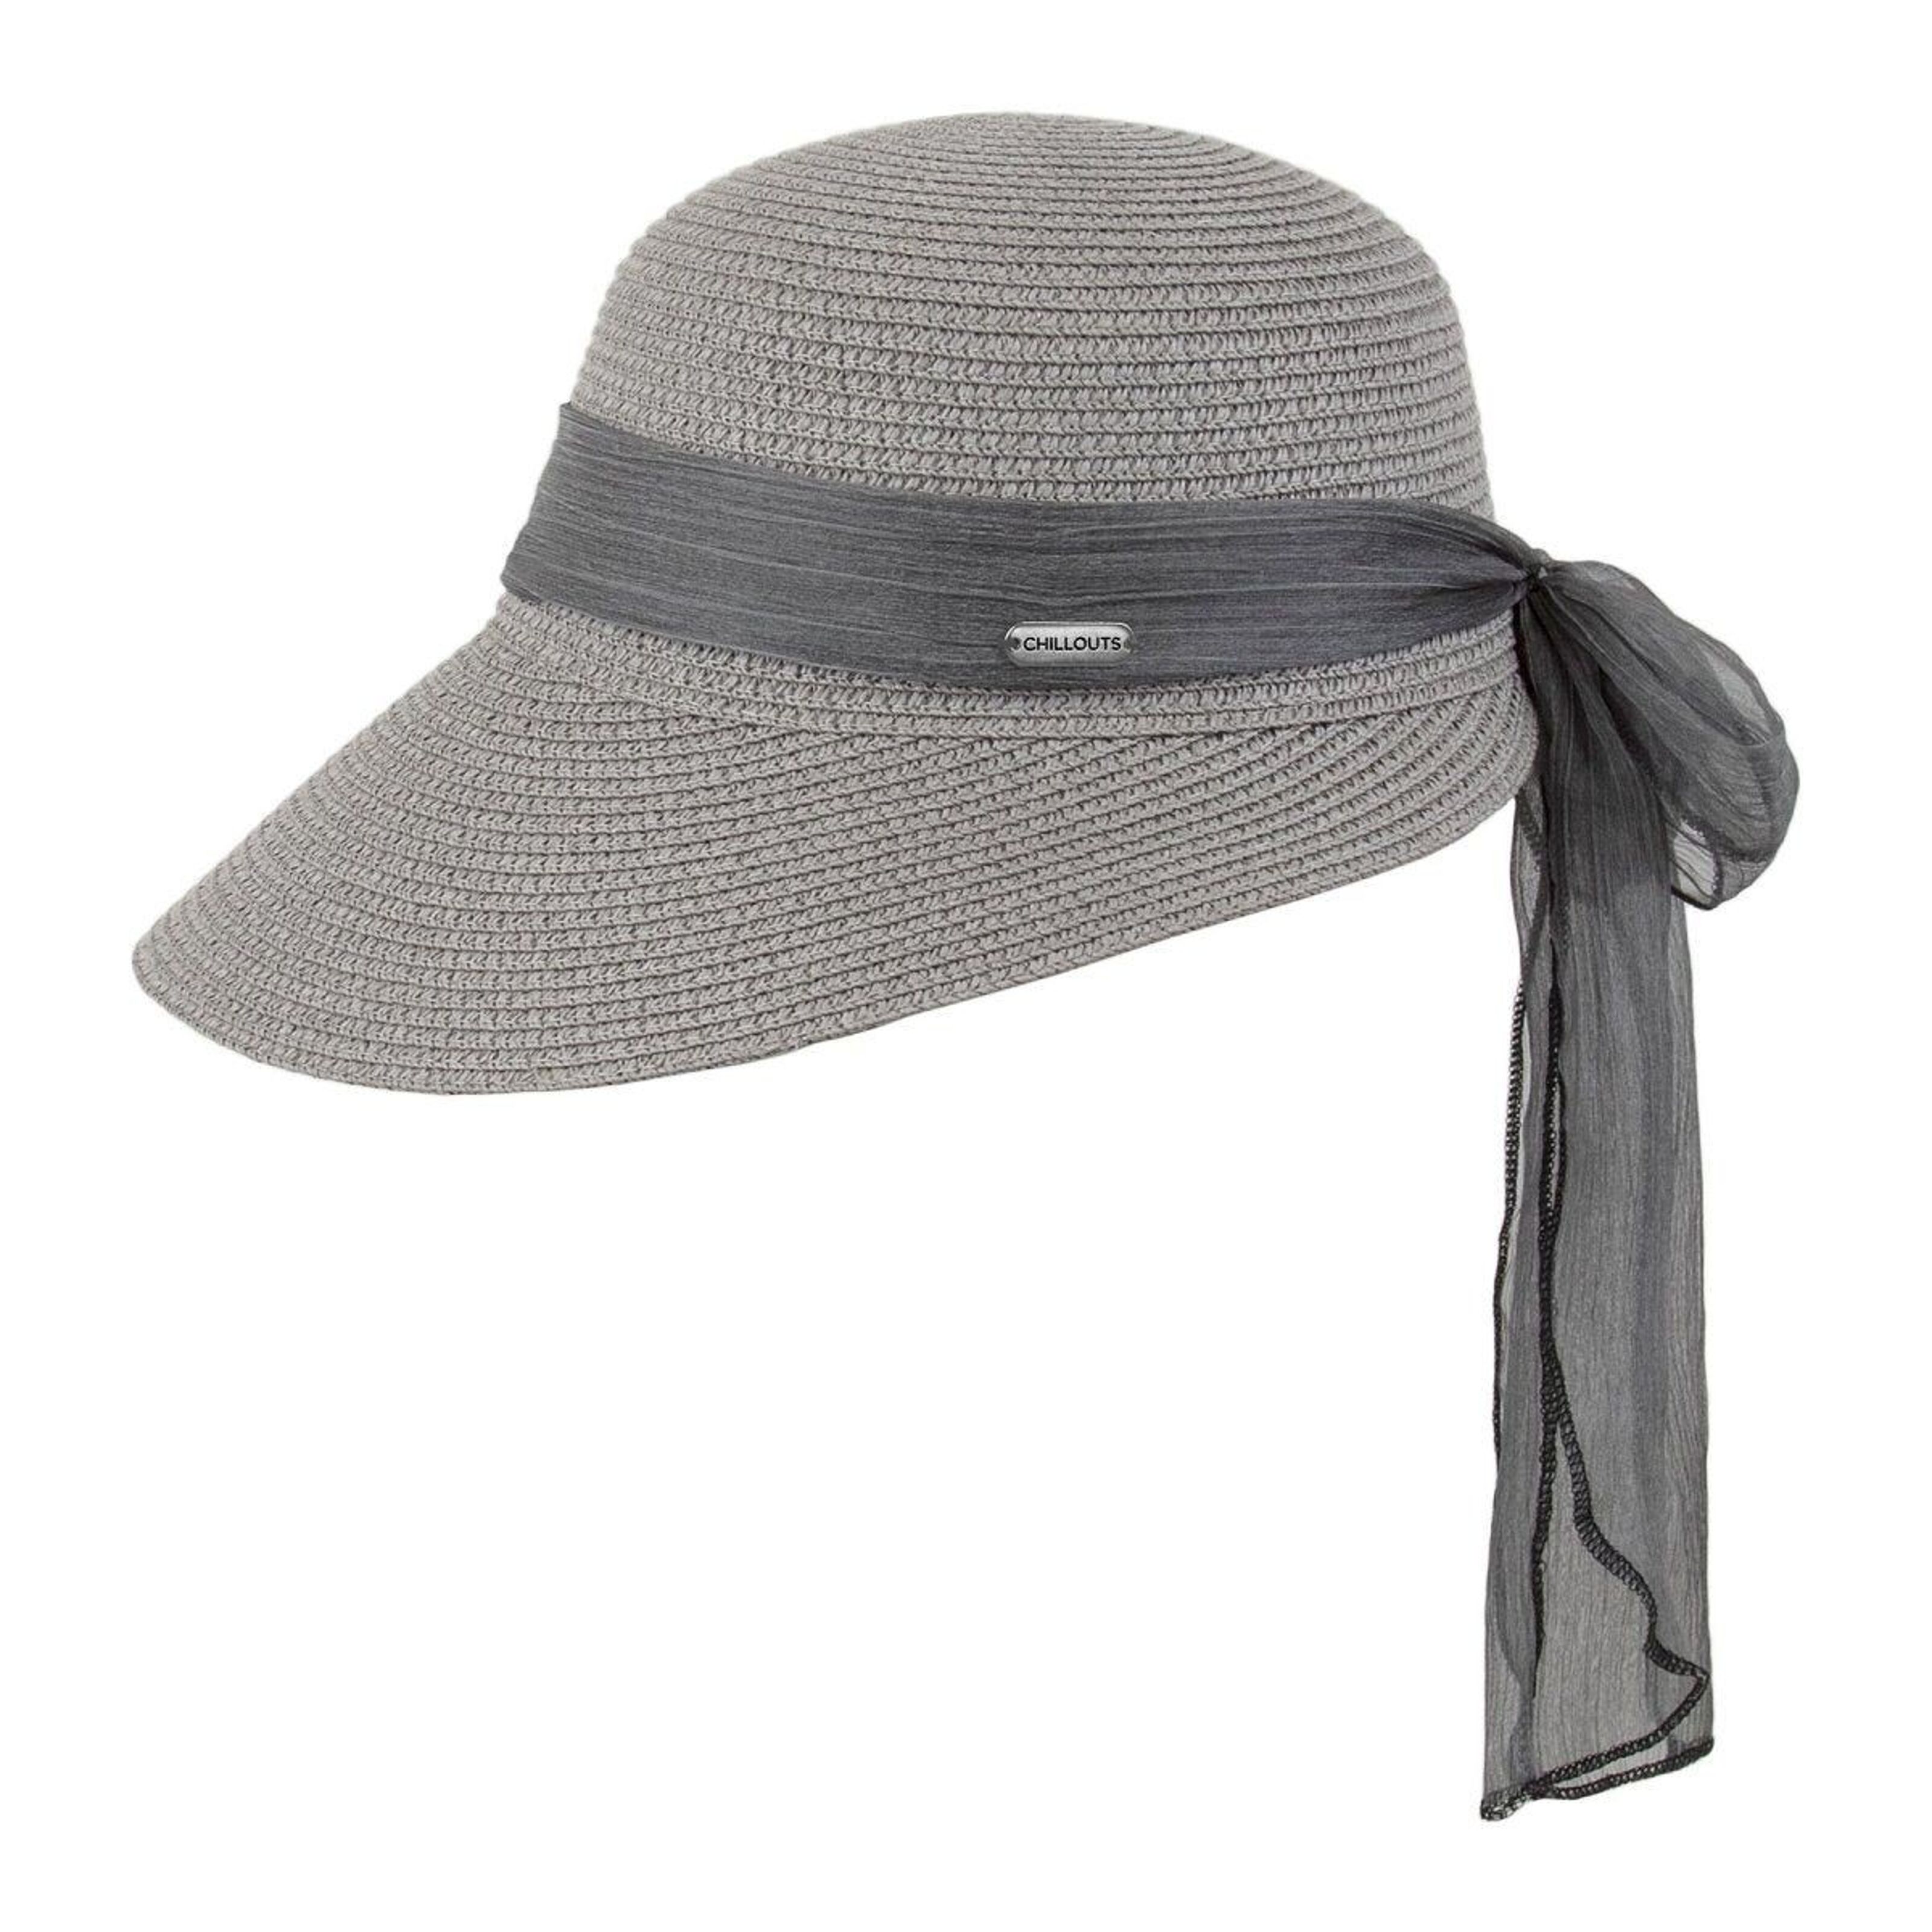 Buy wholesale hat) Lafayette Hat Summer hat (sun